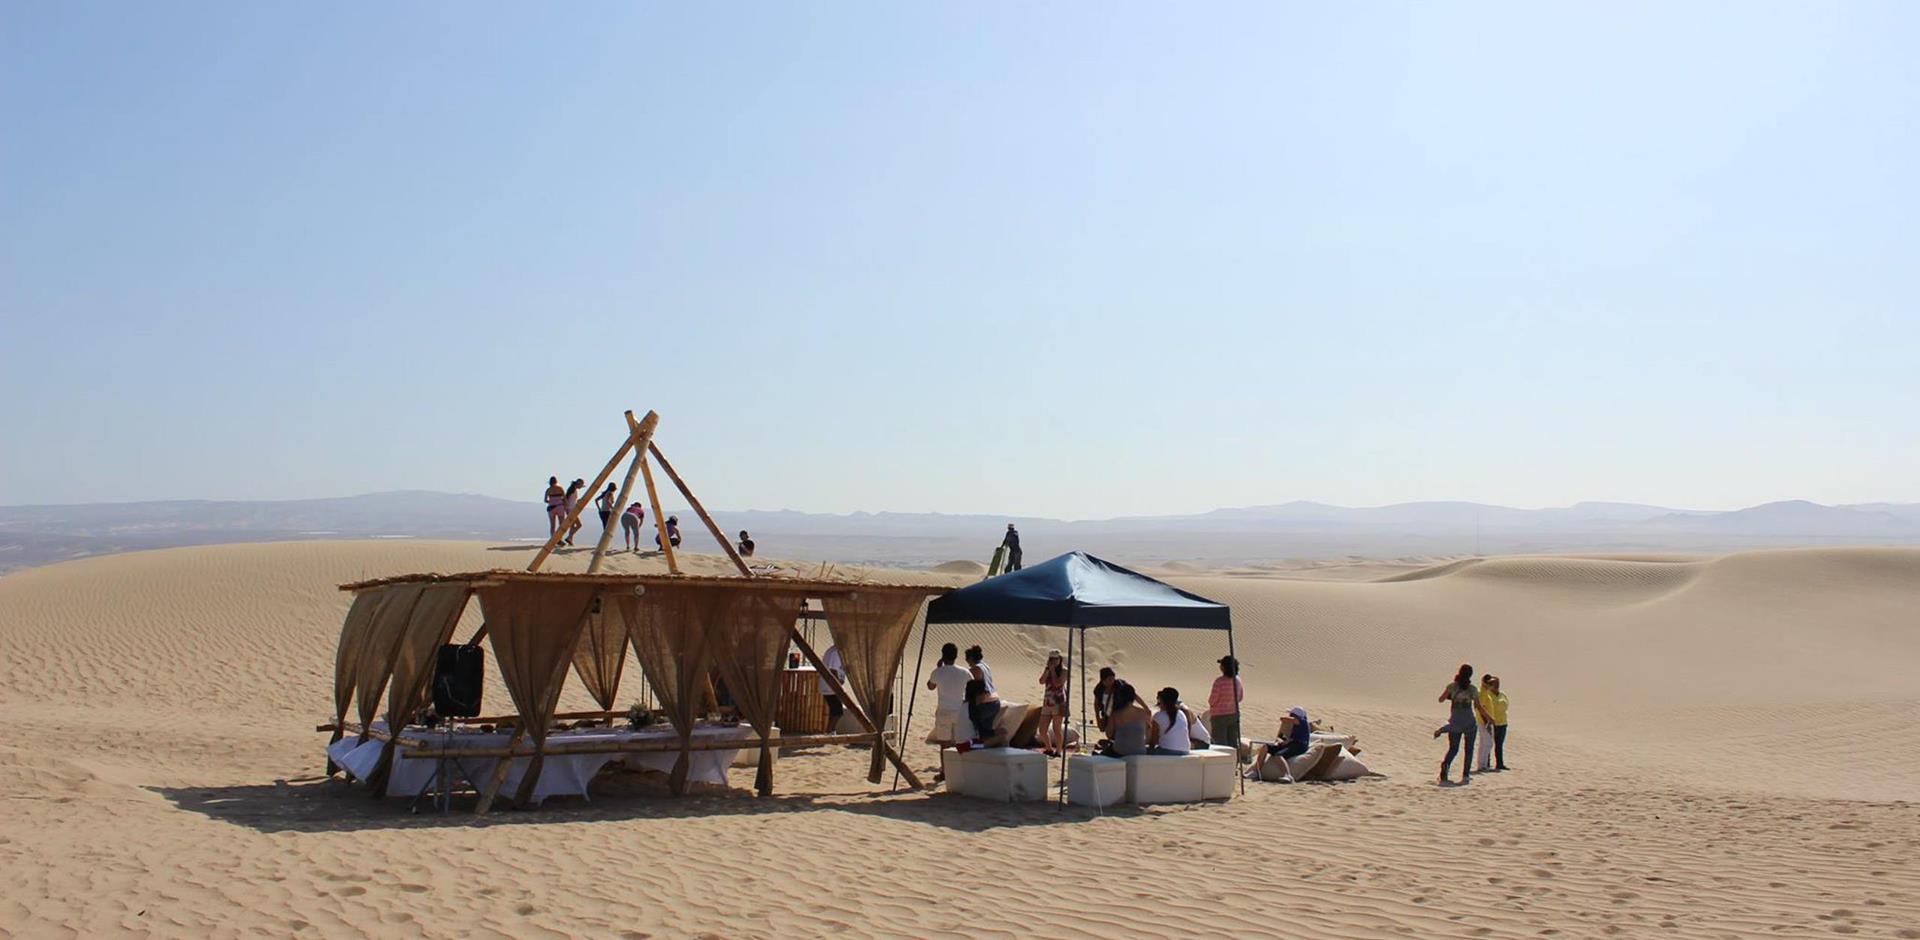 Explore Peru's desert sand dunes